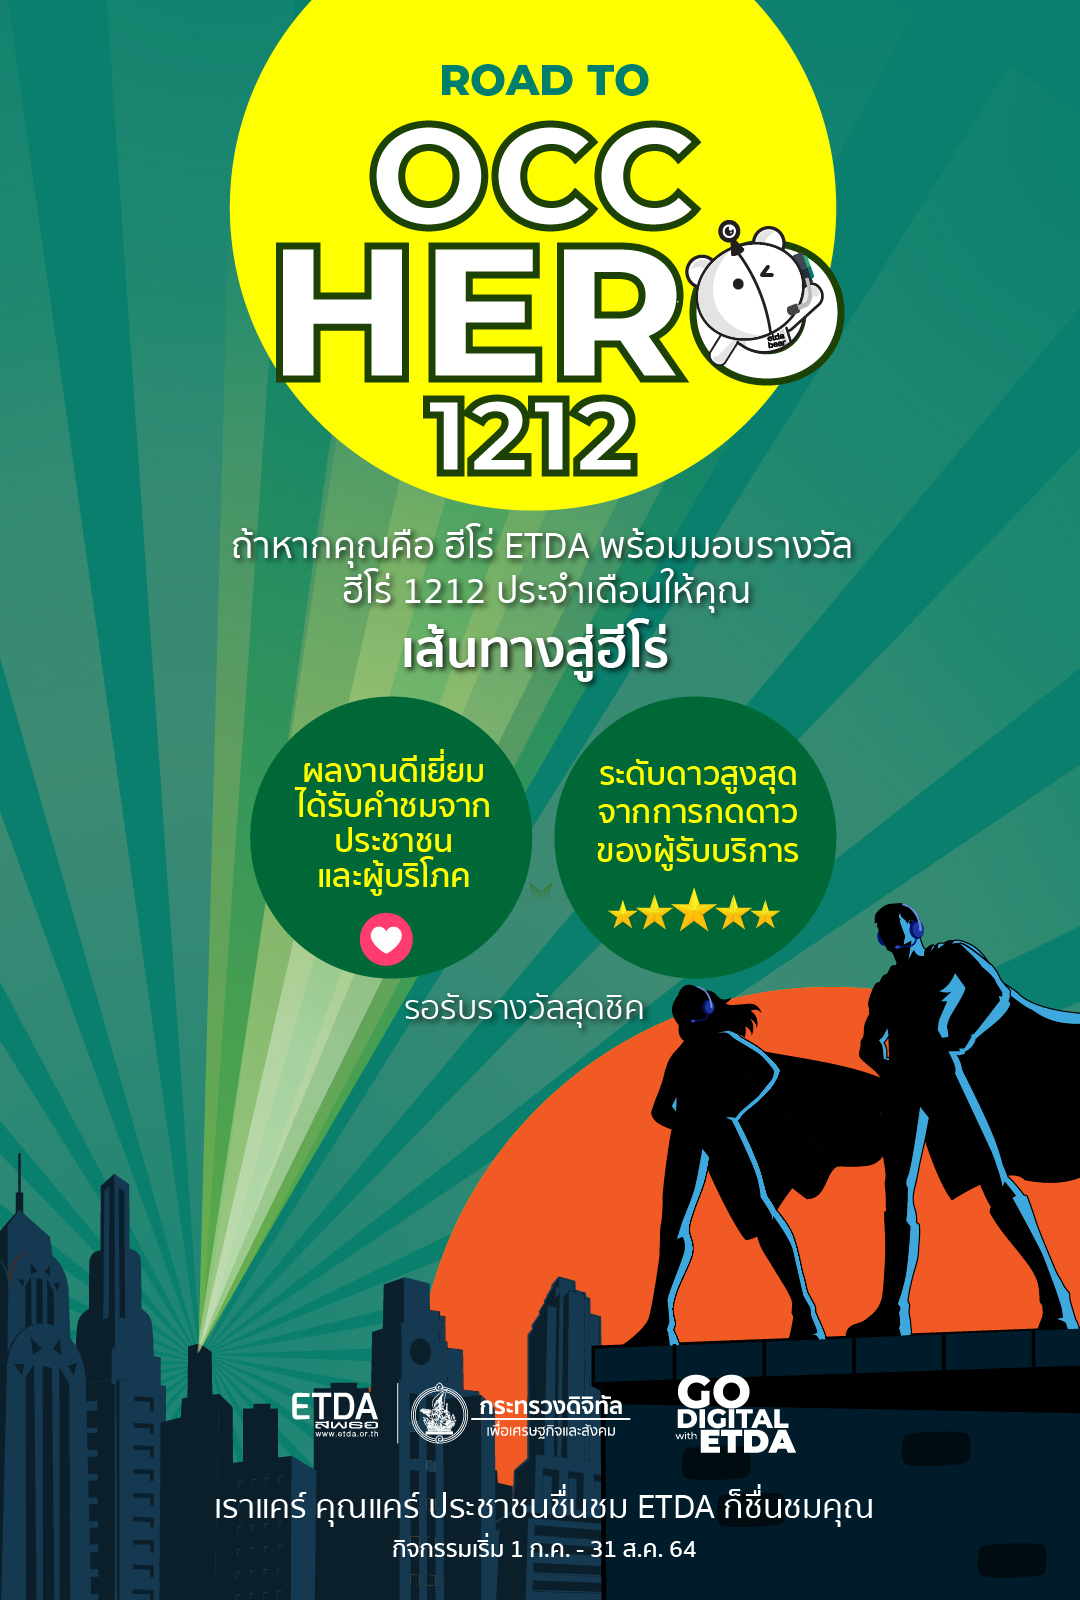 20210630_OCC-HERO.jpg